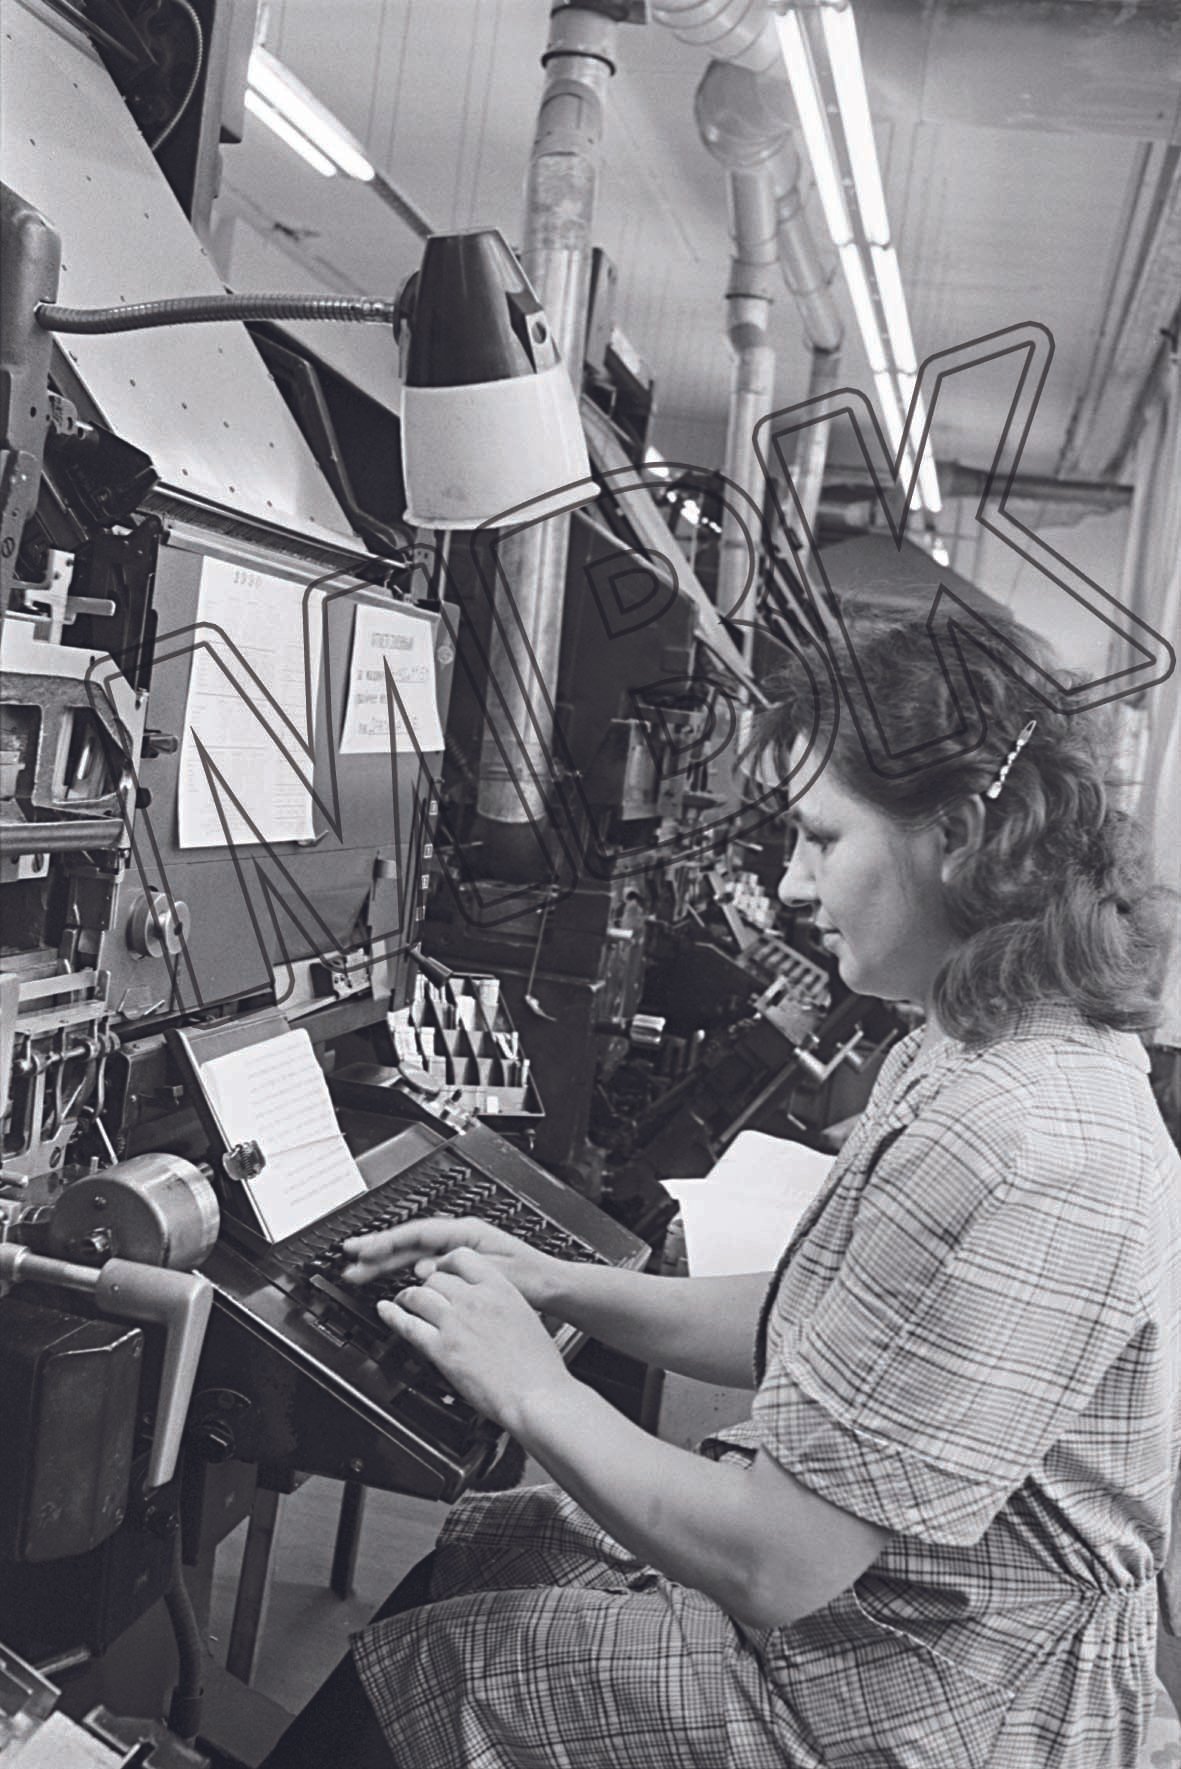 Fotografie: Zivilangestellte in einer Druckerei der WGT, vermutlich Wünsdorf, Juni 1990 (Museum Berlin-Karlshorst RR-P)